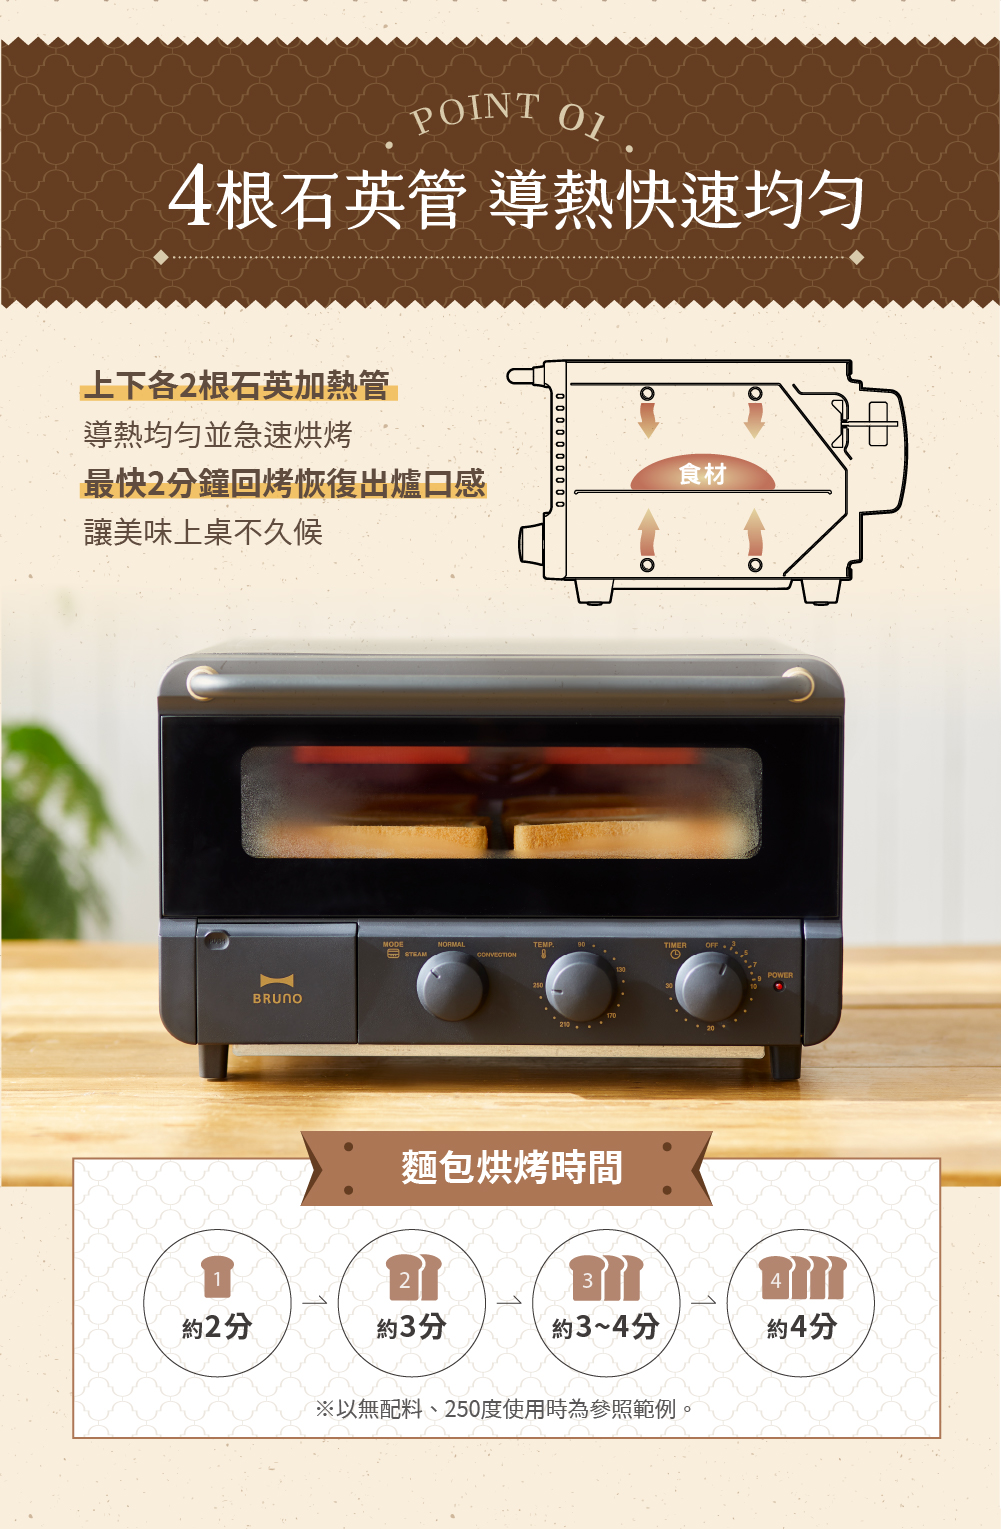 日本BRUNO 簡約設計蒸氣烤箱 磨砂黑款